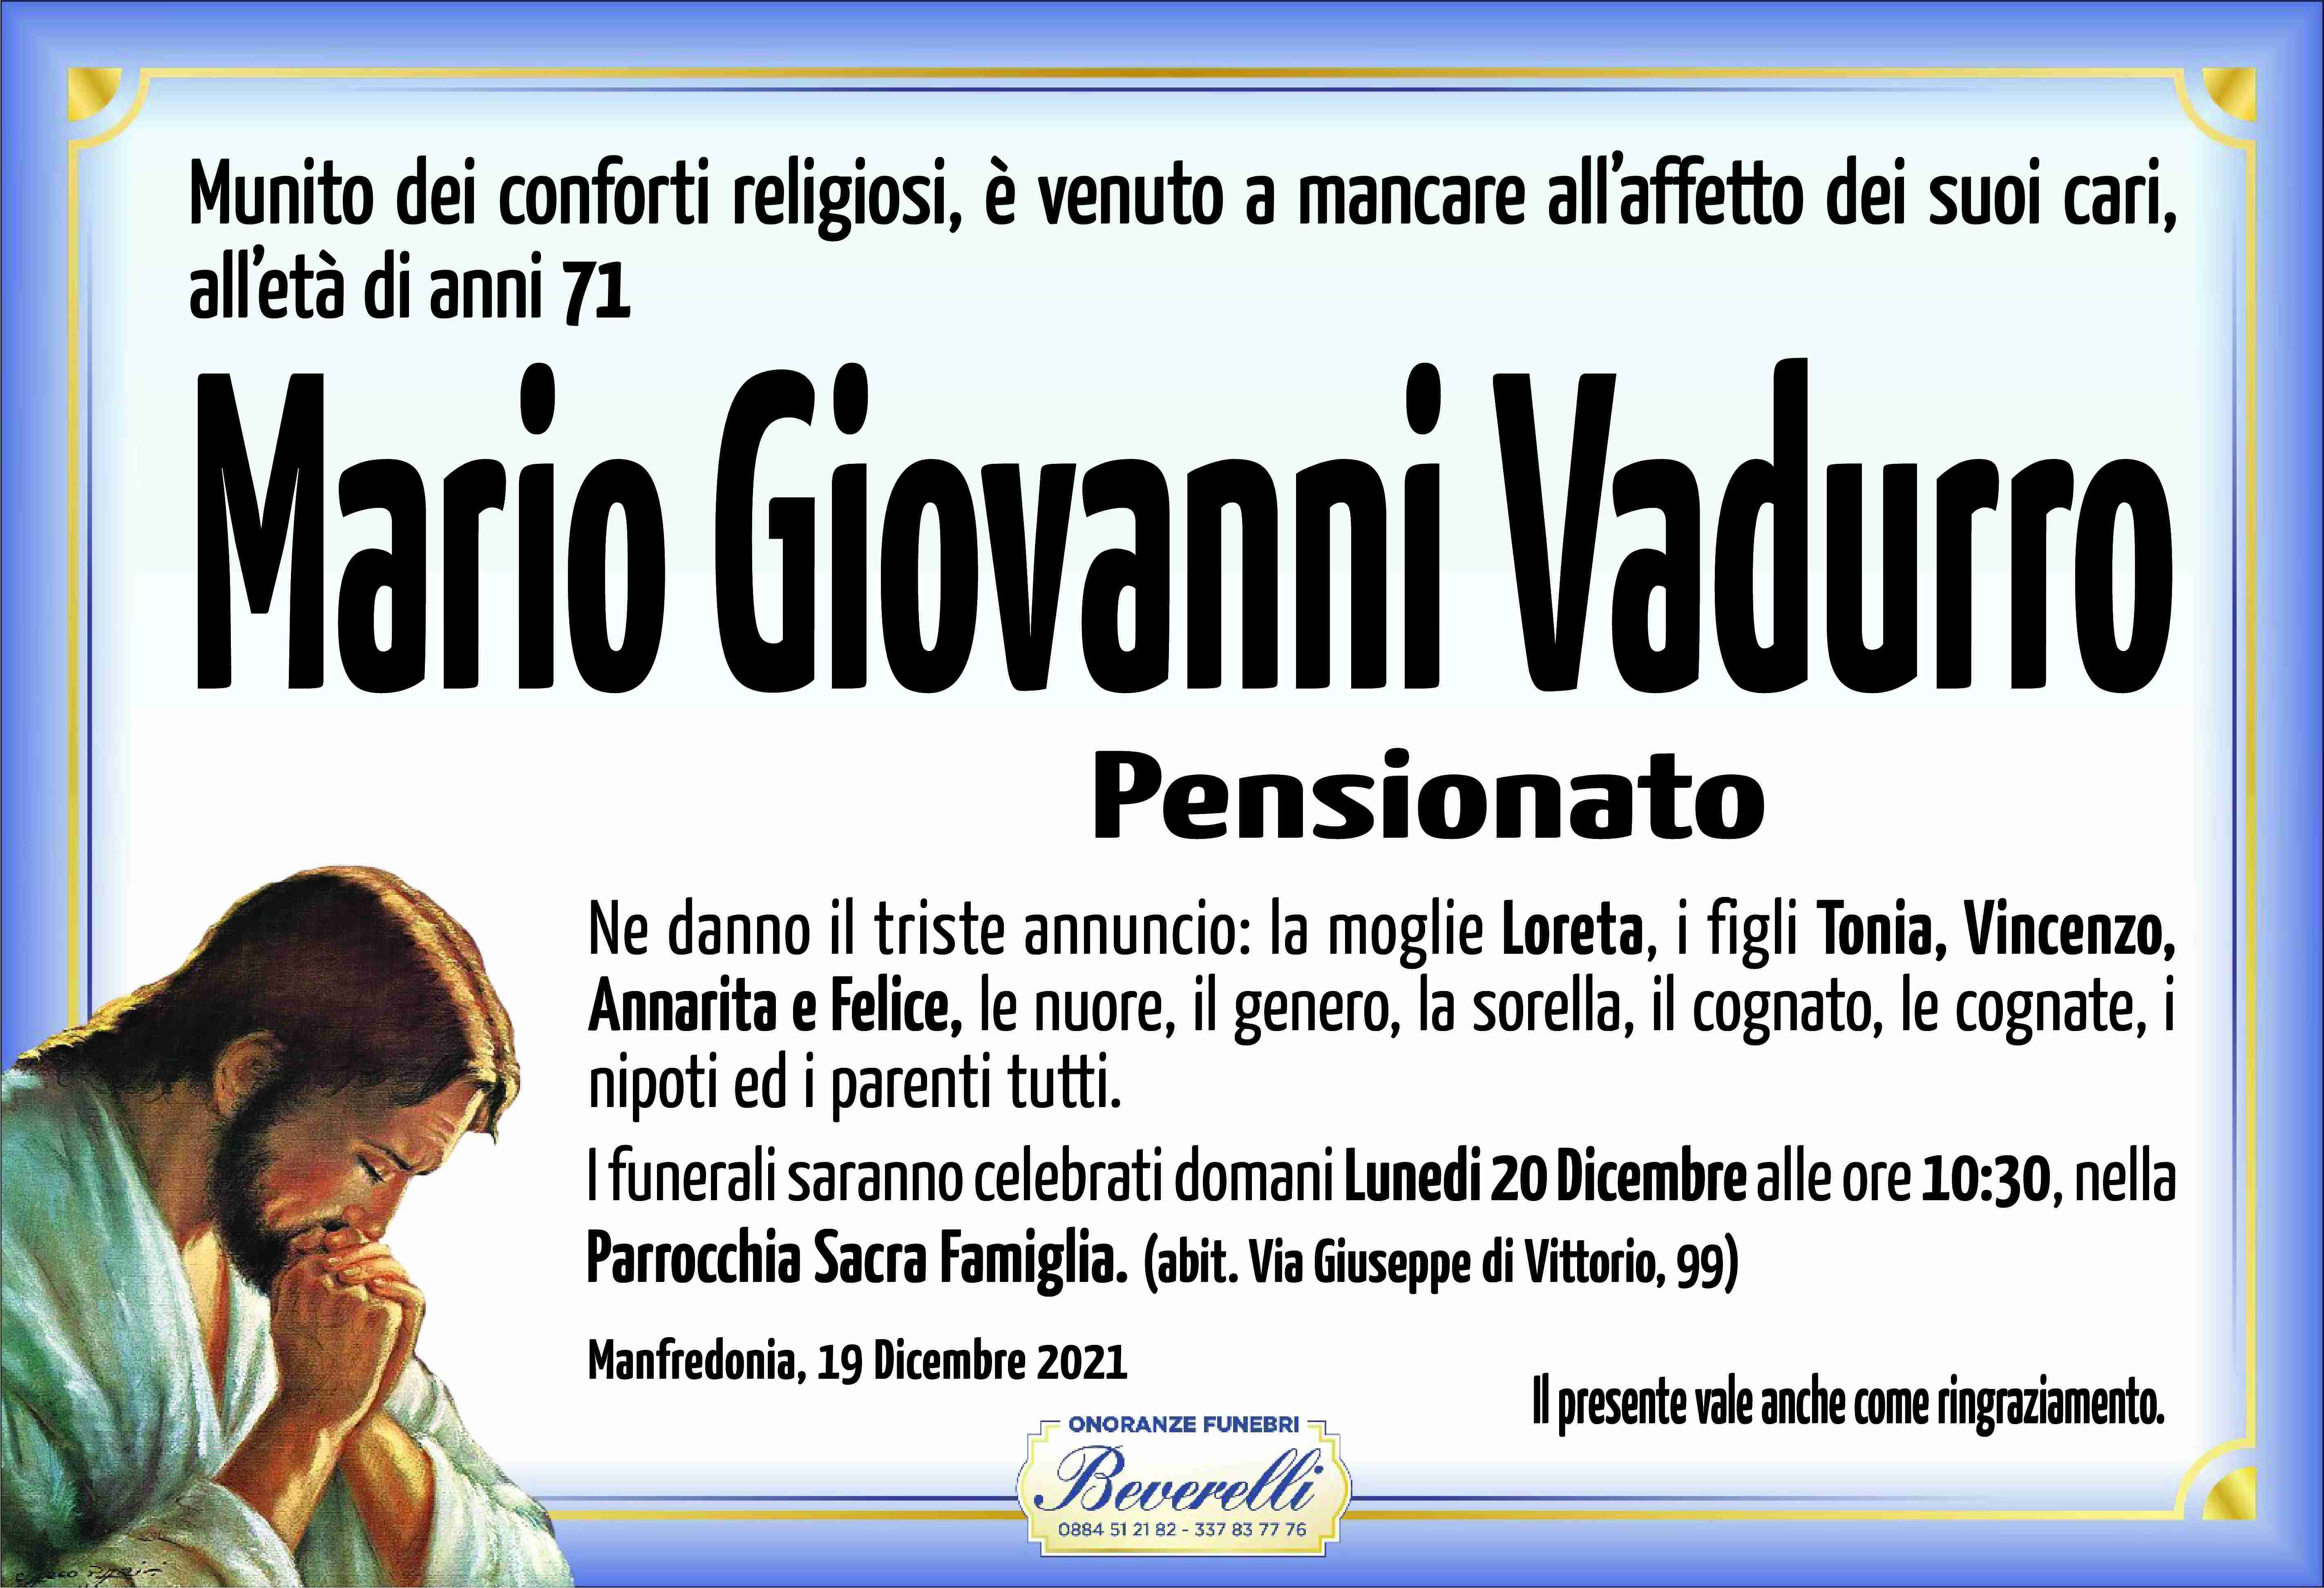 Mario Giovanni Vadurro